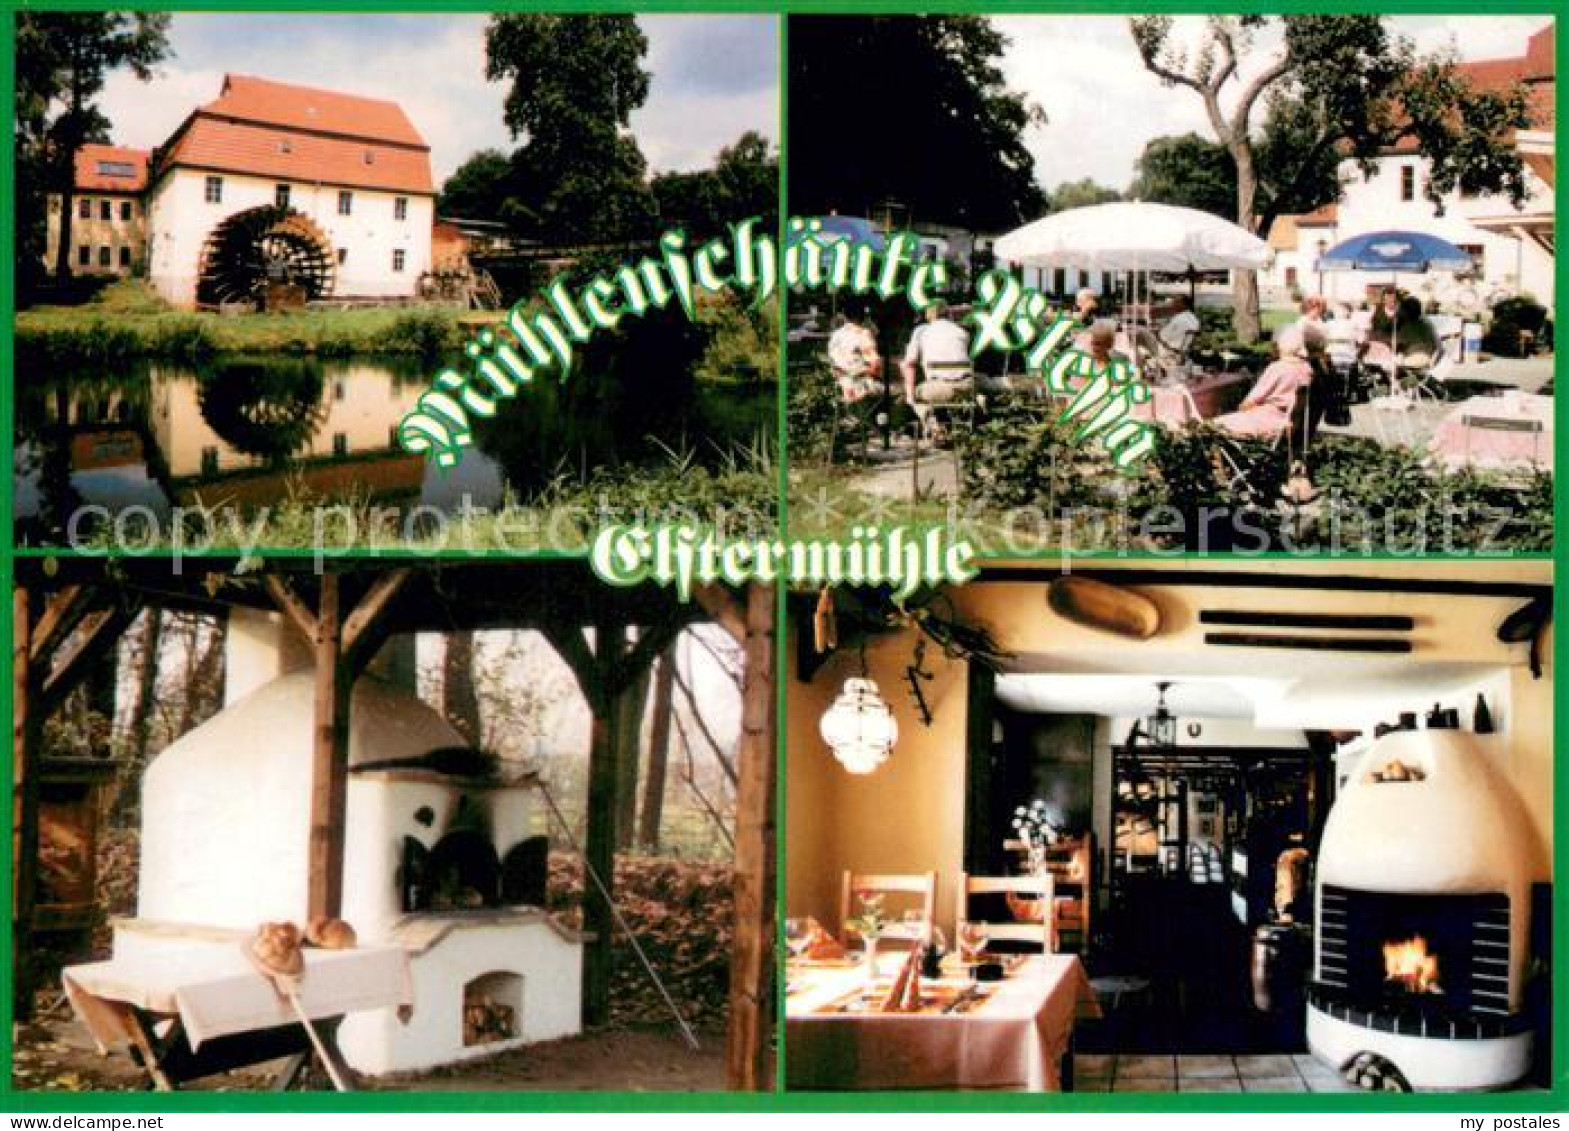 73657843 Plessa Muehlenschaenke An Der Elstermuehle Brotbackofen Terrasse Restau - Plessa